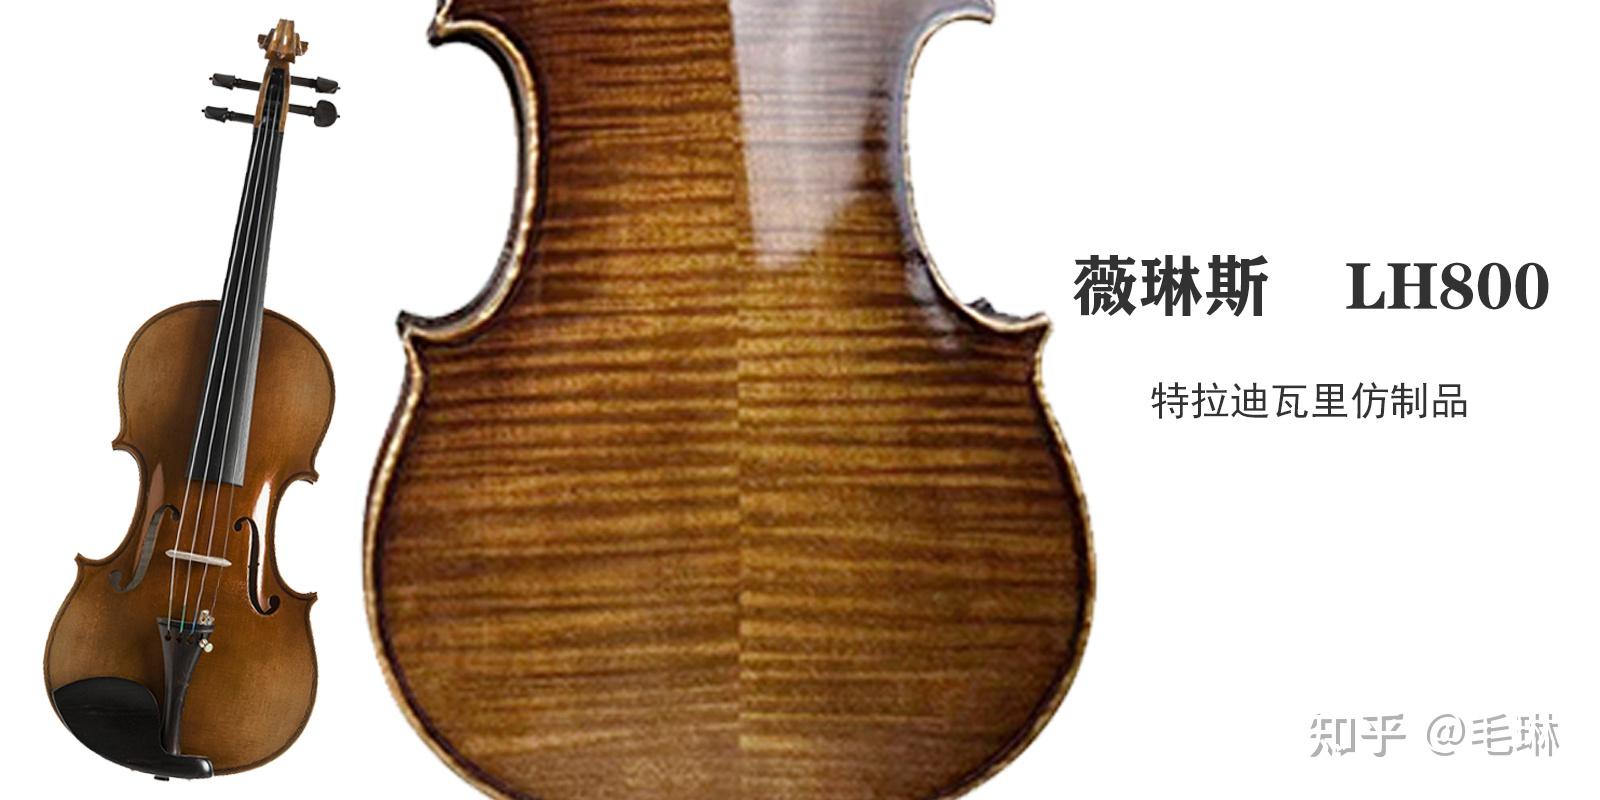 星海小提琴-价格:200元-au30925614-小提琴/提琴 -加价-7788收藏__收藏热线